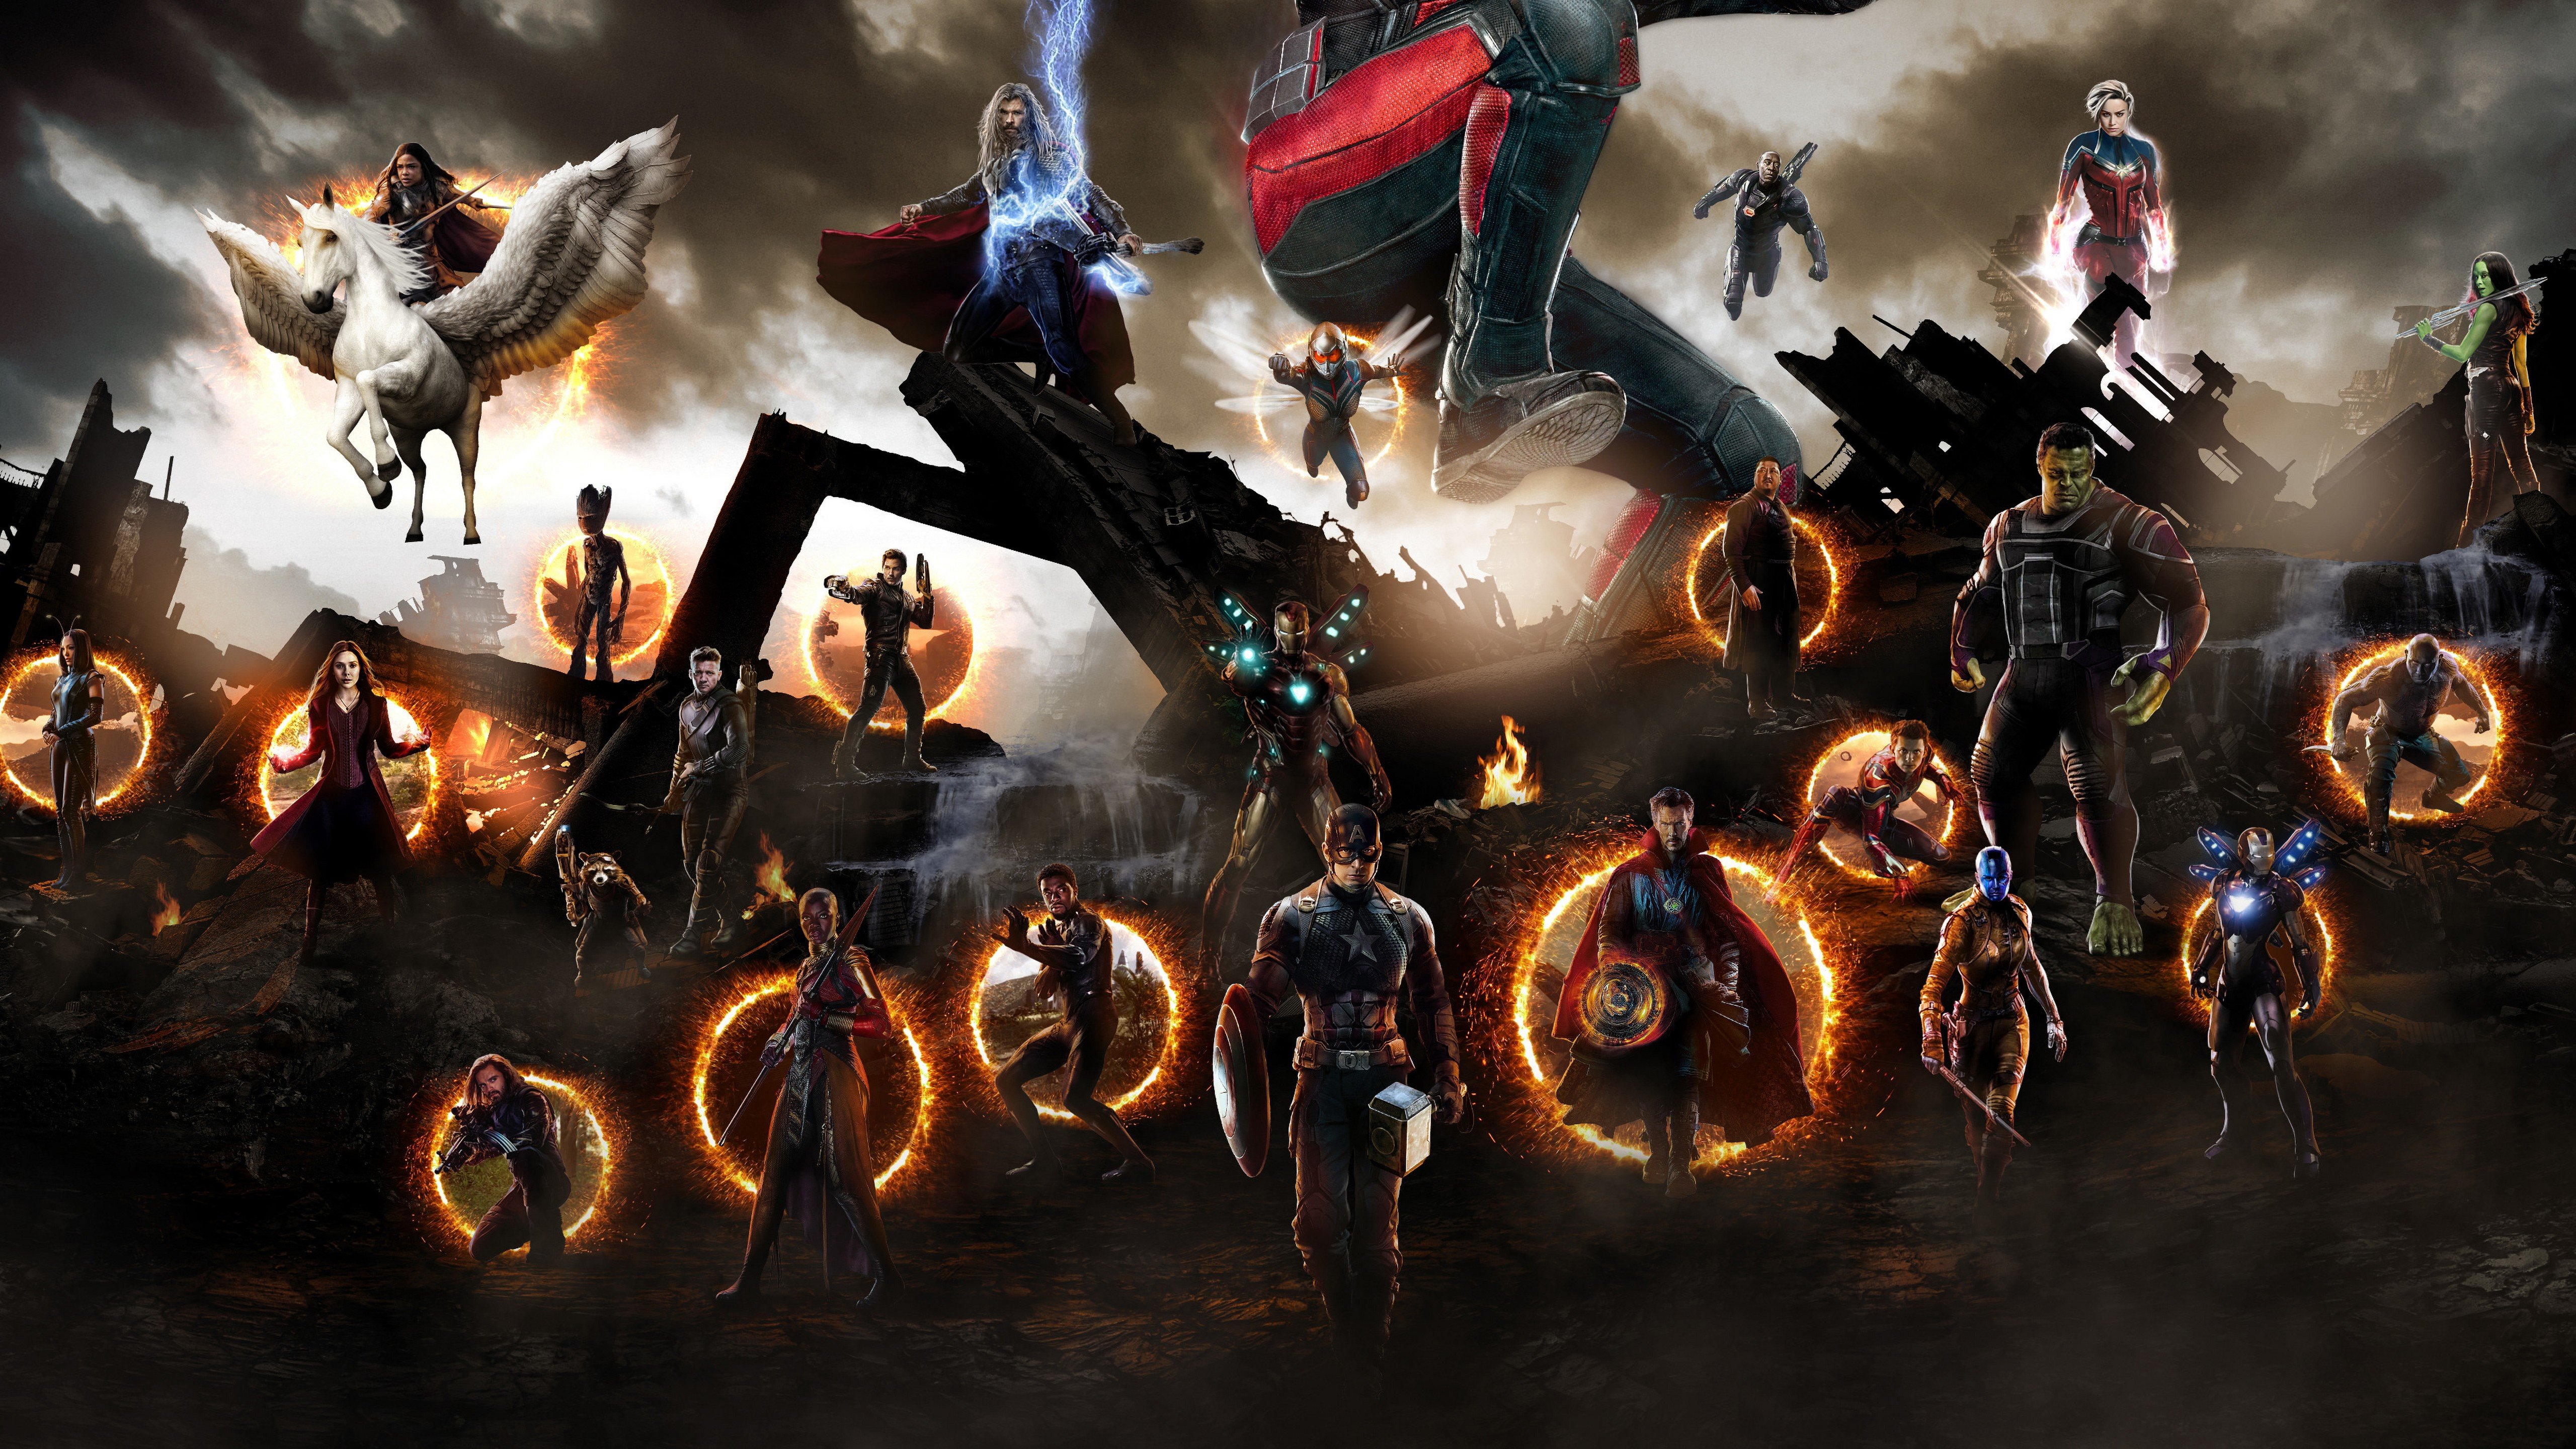 Fondos de pantalla Avengers: Endgame batalla final